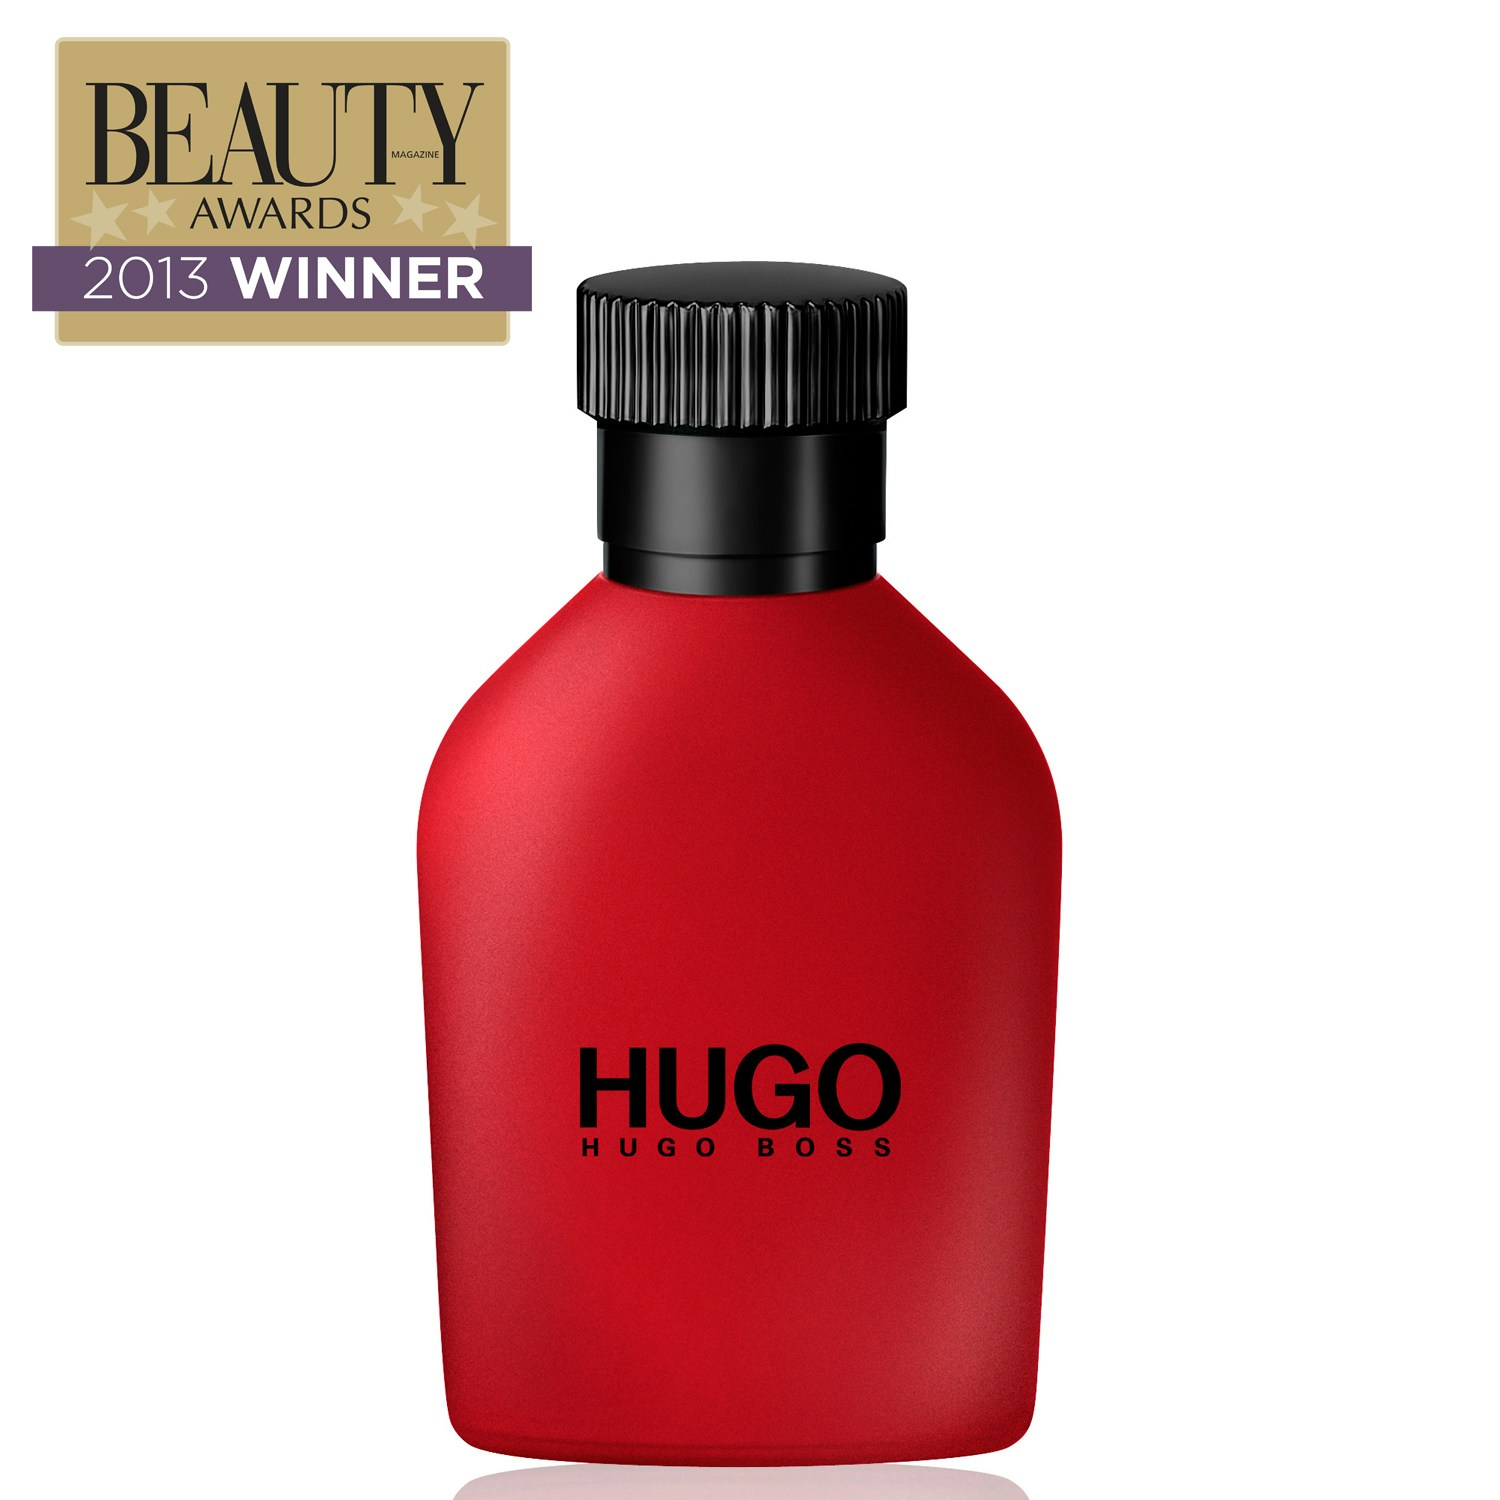 Хуго босс ред. Hugo Boss Hugo Red 150ml. Hugo Boss мужской Hugo туалетная вода (EDT) 40мл. Хьюго бос мудские красные. Хуго босс красный флакон мужские.